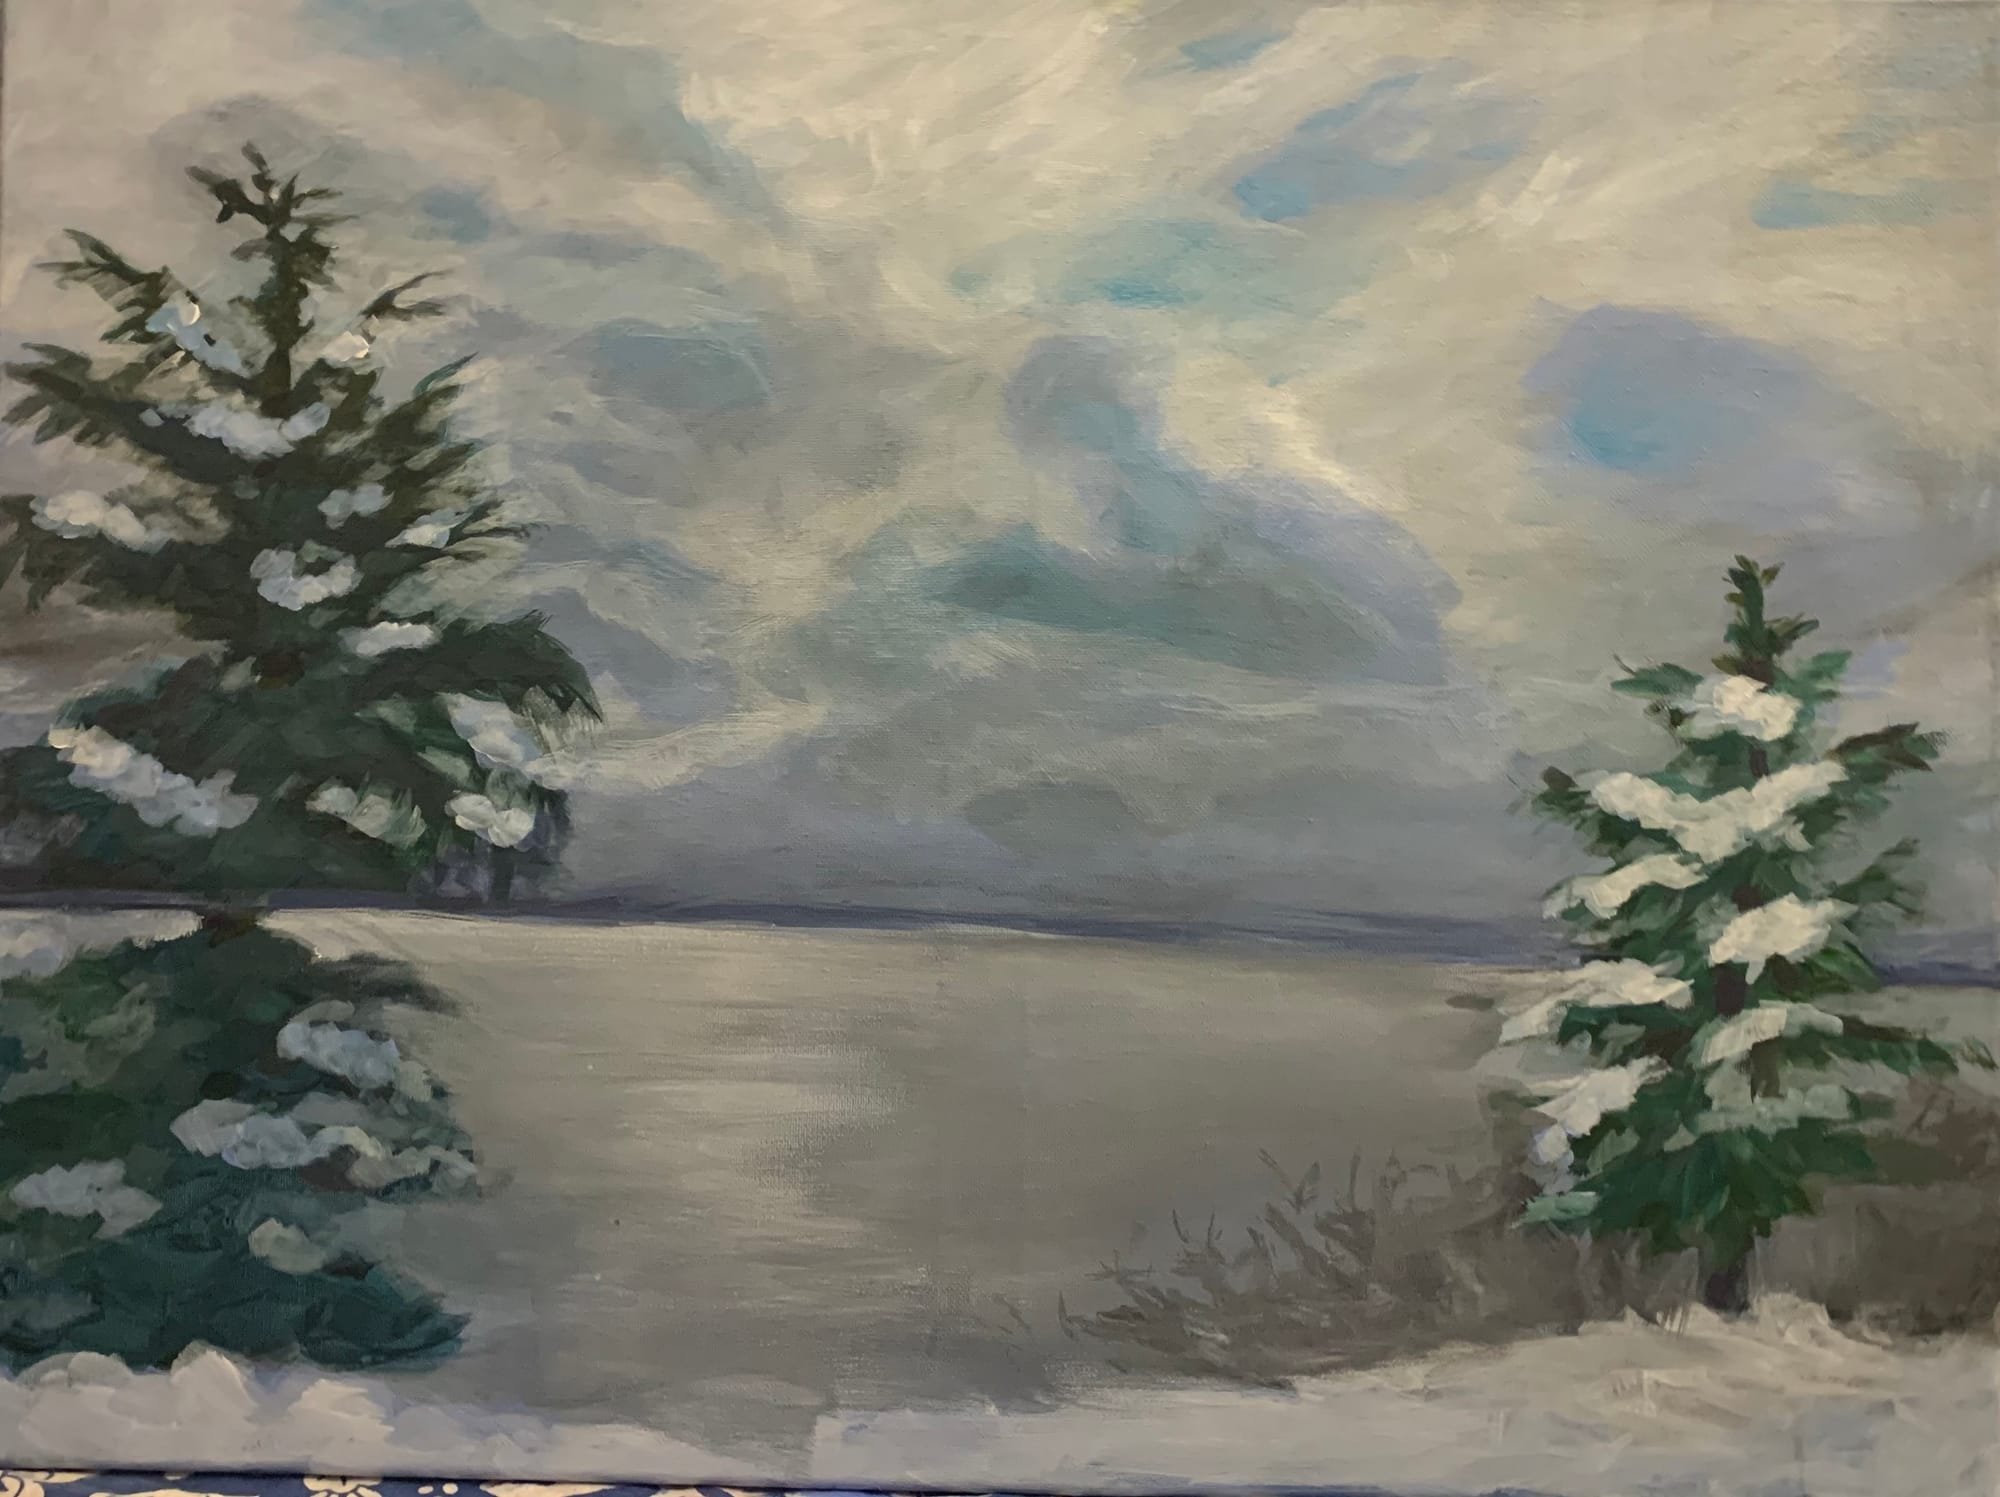 # 8 - Lake Simcoe in Winter